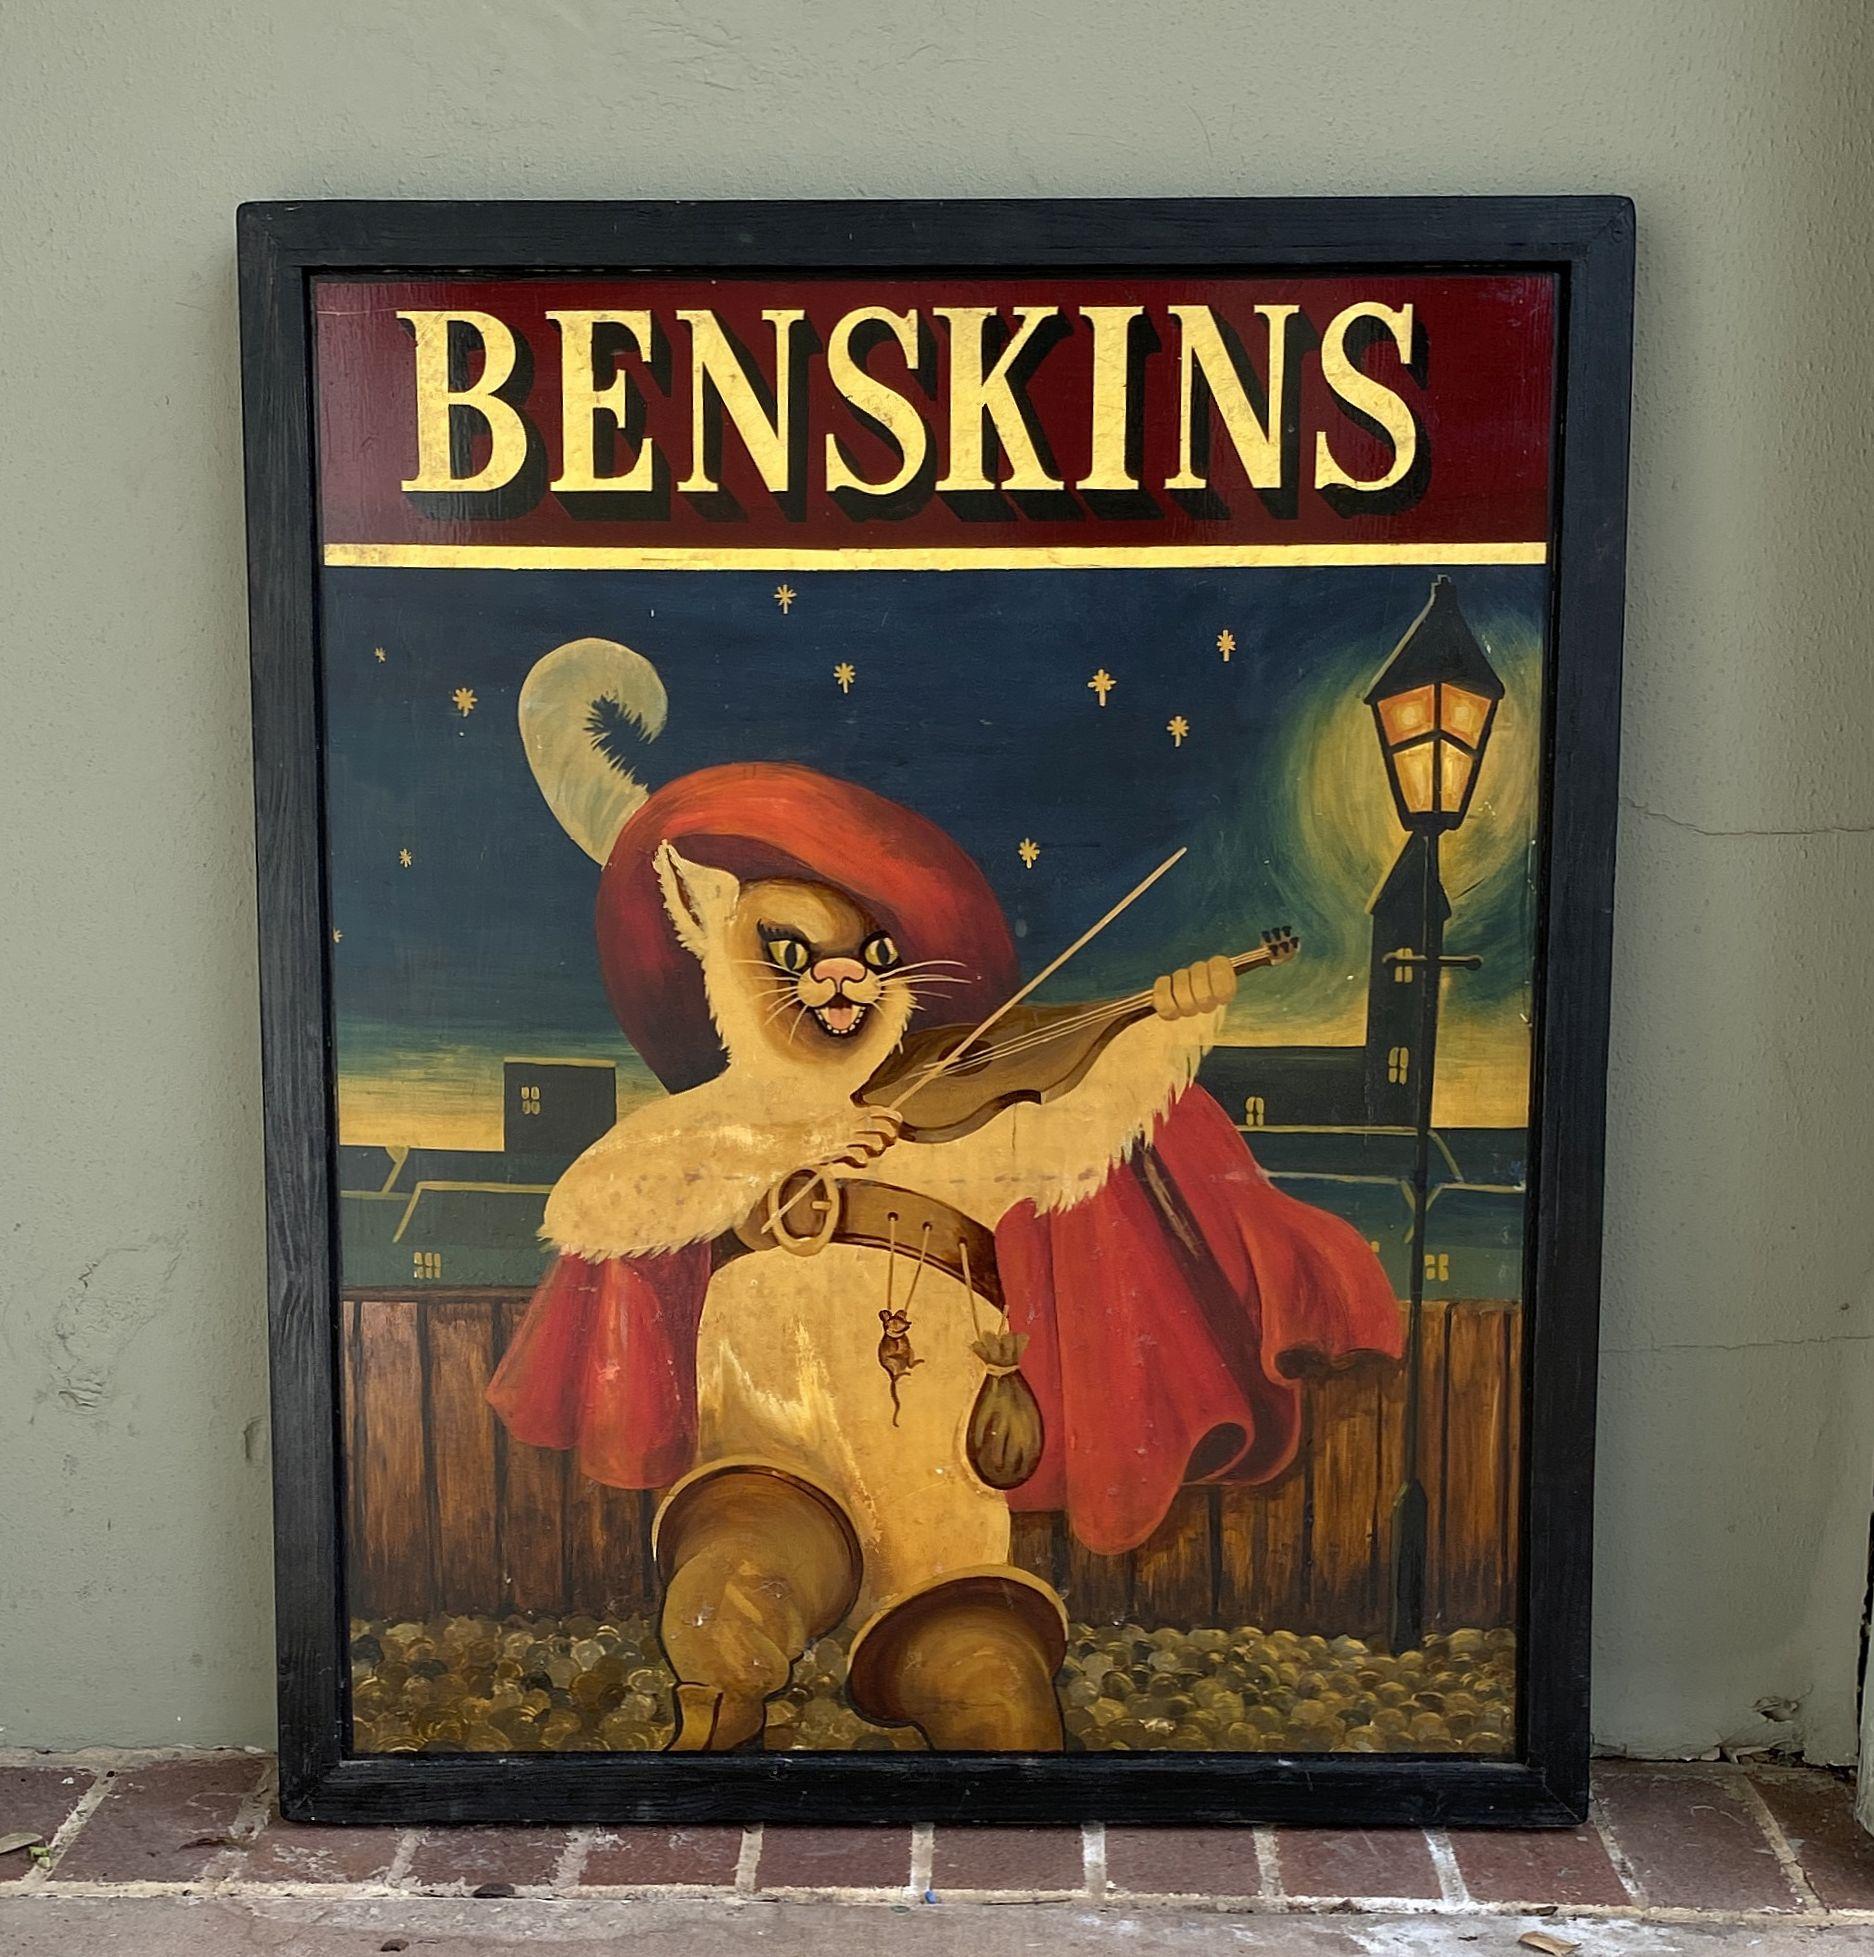 Ein authentisches englisches Pub-Schild (einseitig) mit dem Gemälde einer Geige spielenden Katze - aus dem beliebten Märchen Der gestiefelte Kater - im Licht einer nächtlichen Straßenlaterne mit dem Titel: Benskins.

Ein sehr schönes Beispiel für